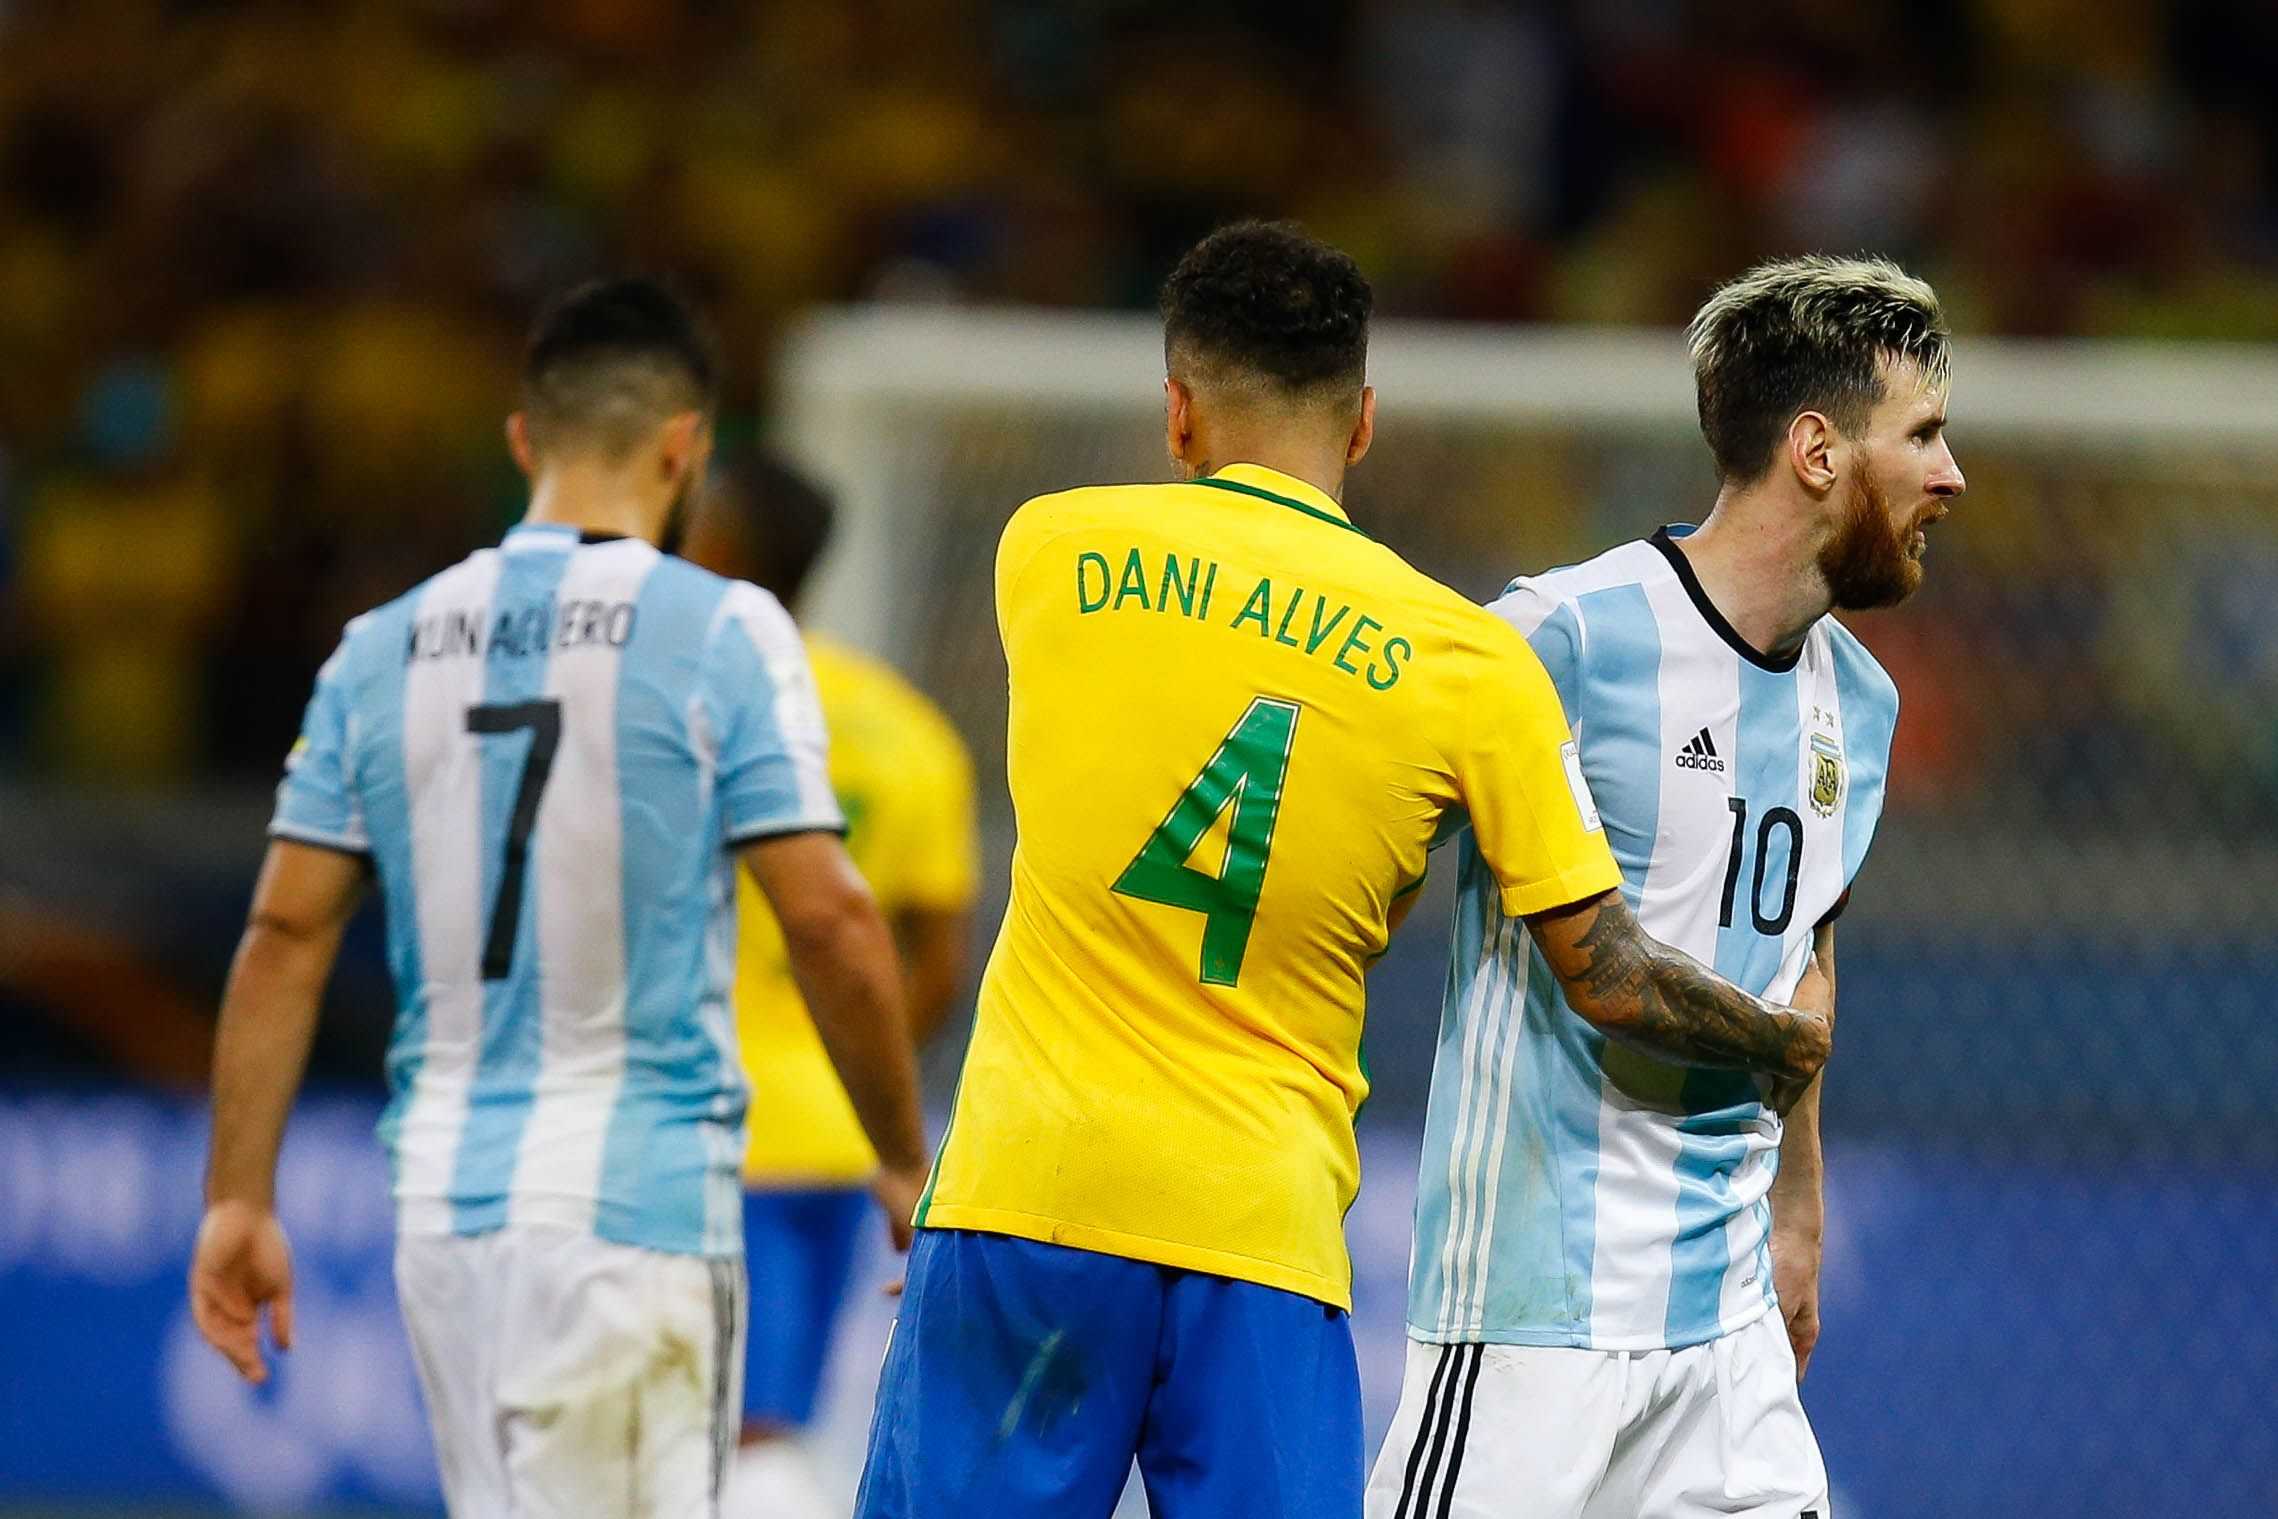 Alves consola Messi després de la derrota